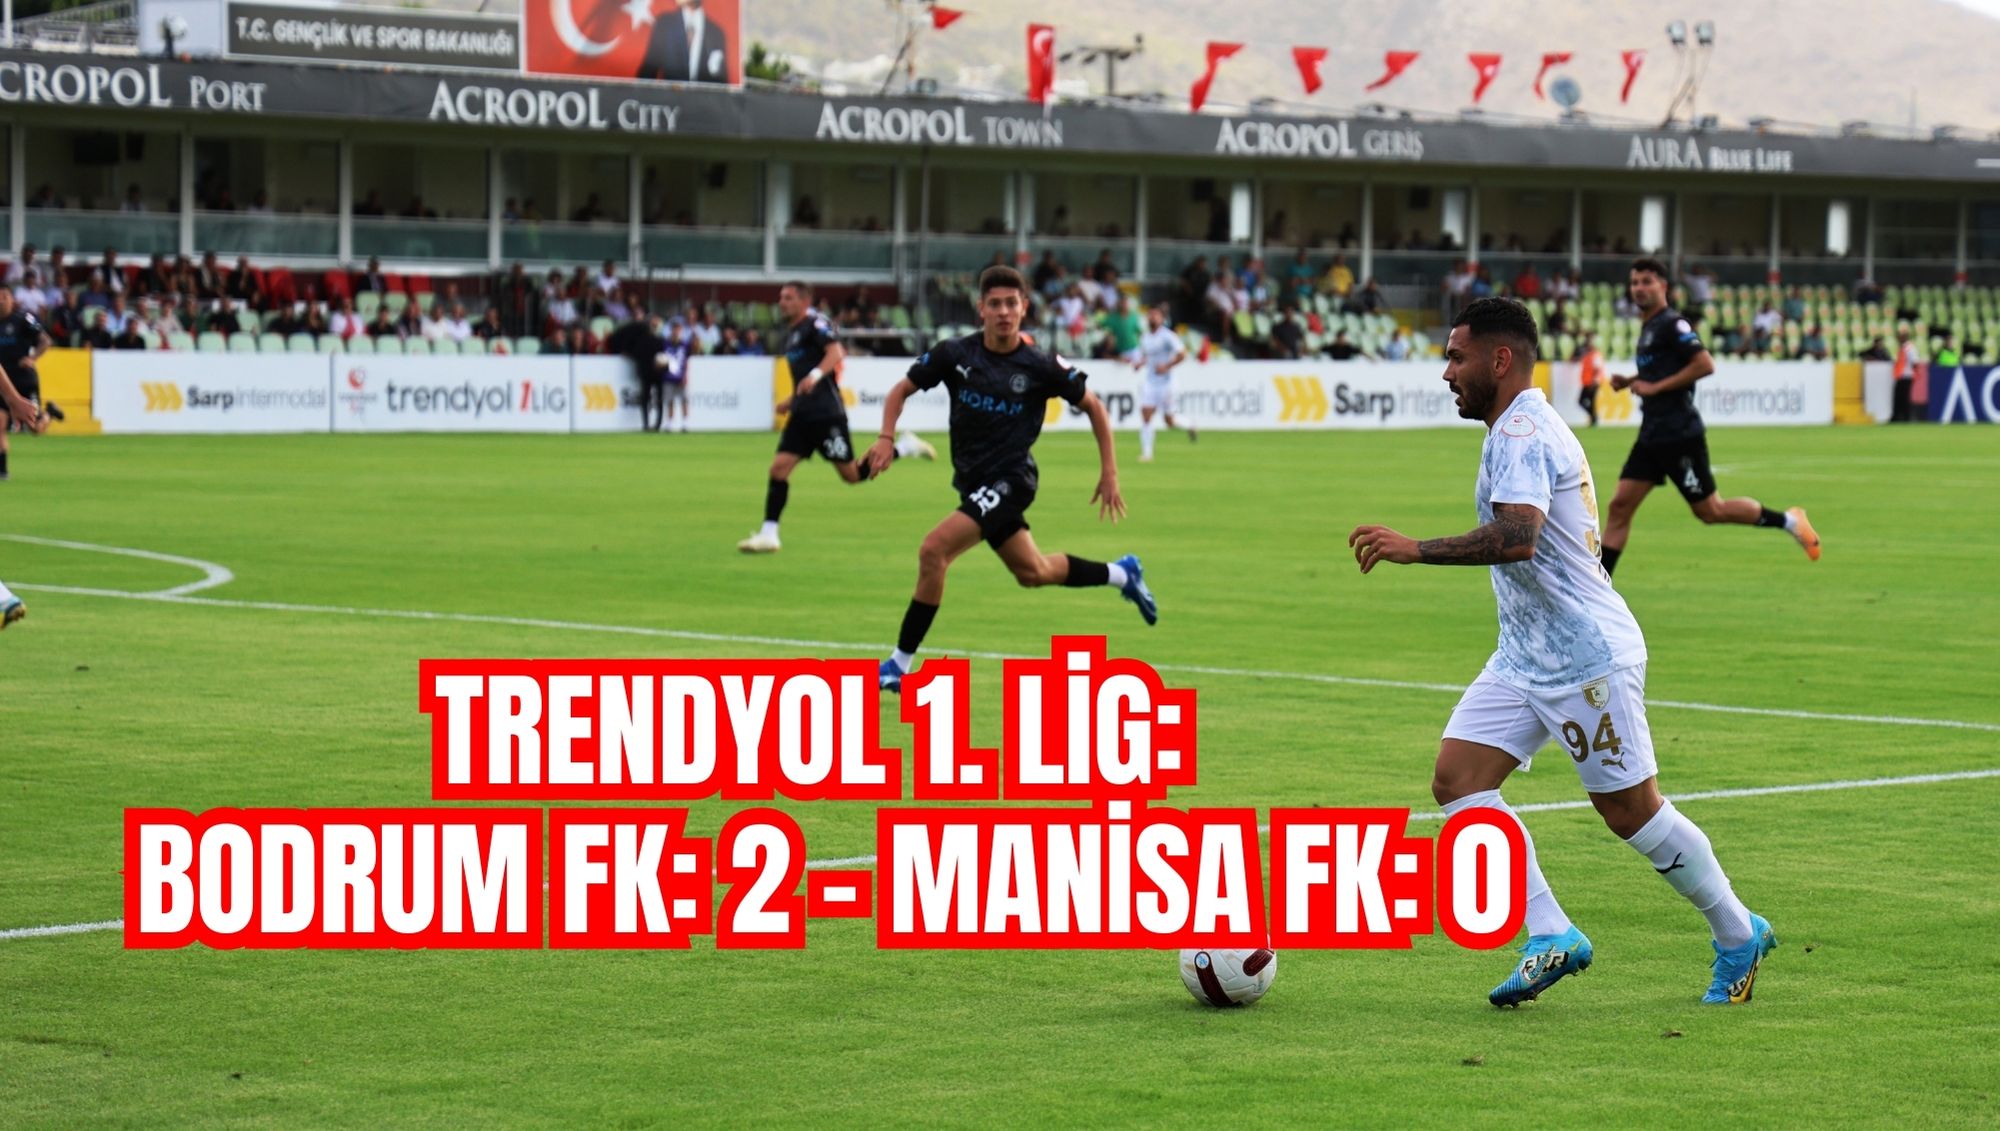 Trendyol 1. Lig: Bodrum FK: 2 - Manisa FK: 0